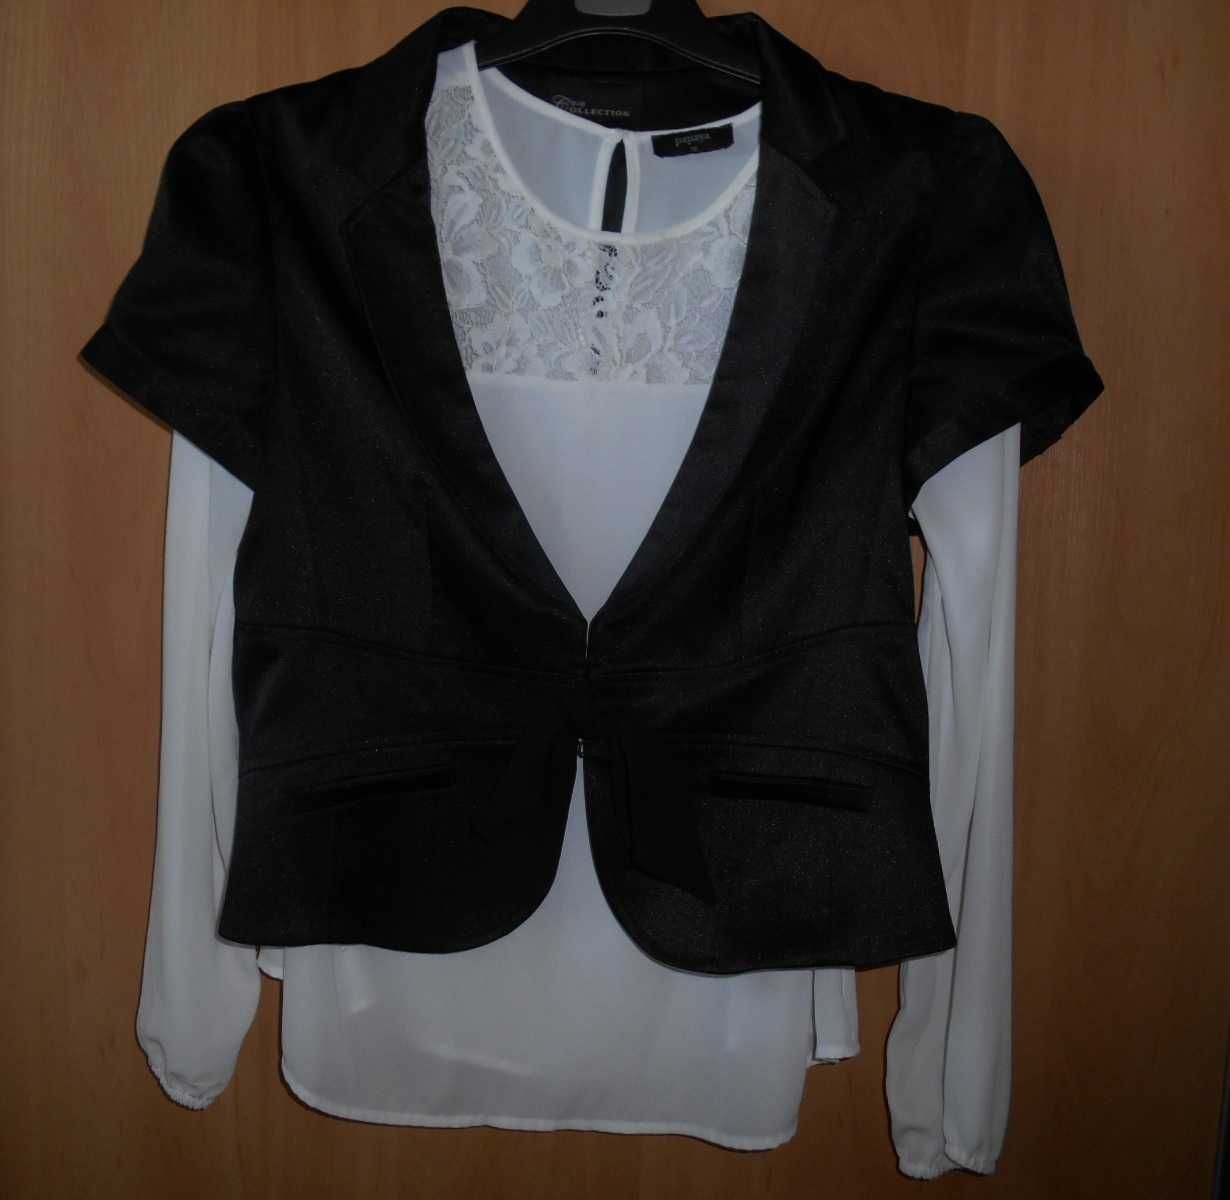 пиджак болеро накидка черный 52-54 размер